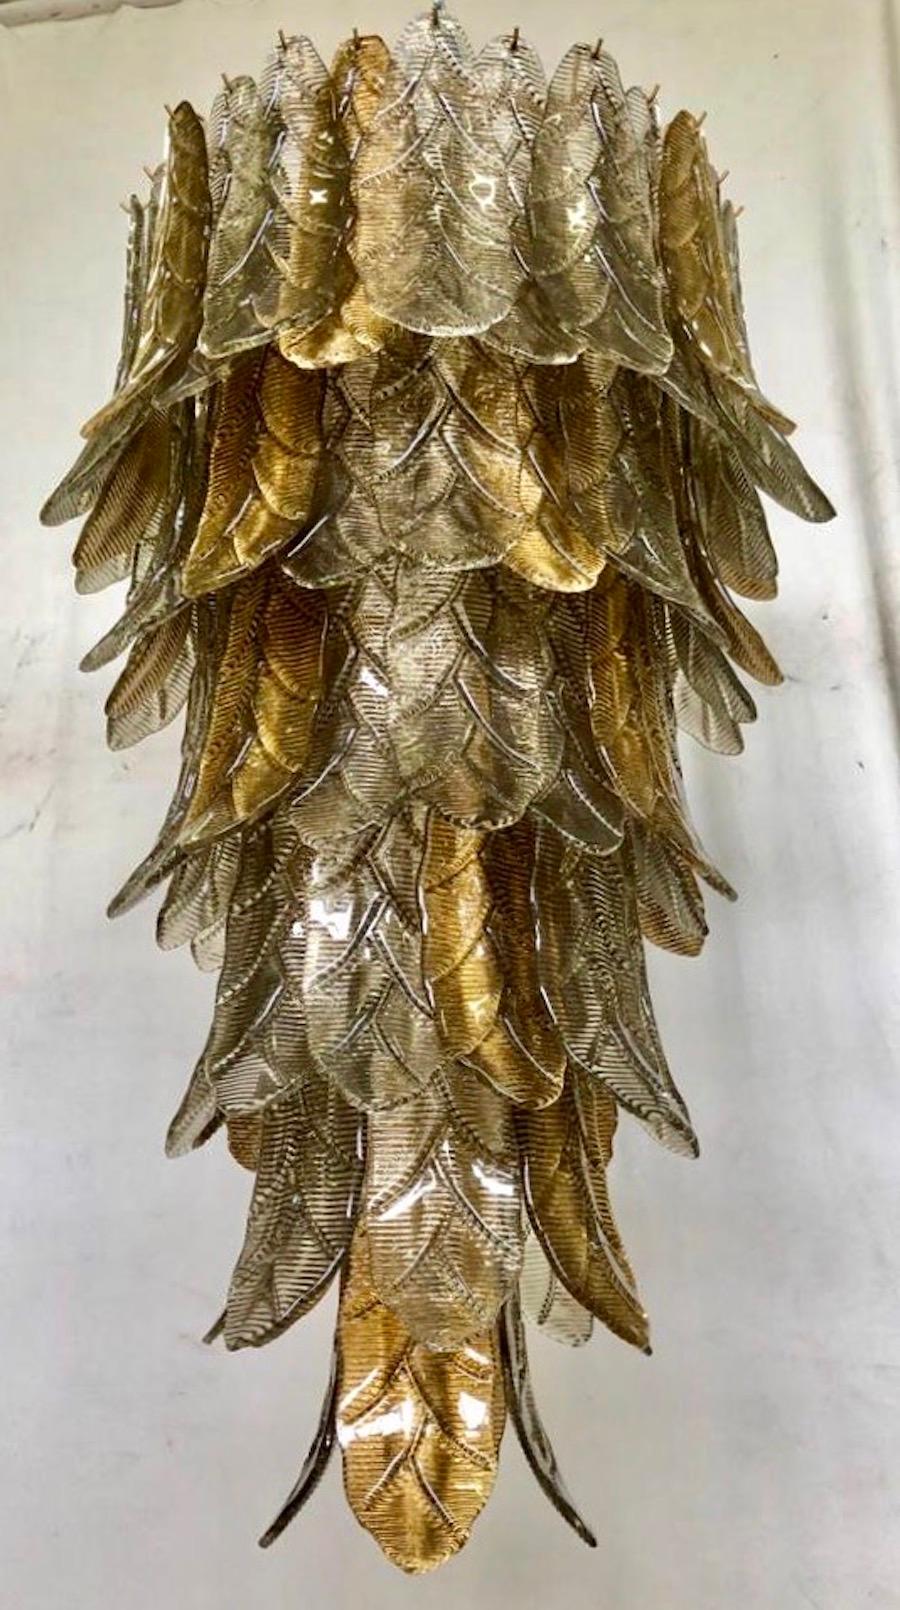 Ein Aufruhr von Blättern, mit einer eleganten Doppelfarbe aus Gold und Rauch. Raffinesse und Klasse im Murano-Stil, einzigartige Stücke, die immer wertvoll bleiben.

Goldfarbene Eisenstruktur mit Blättern aus Murano-Glas rundherum, in zwei Farben.